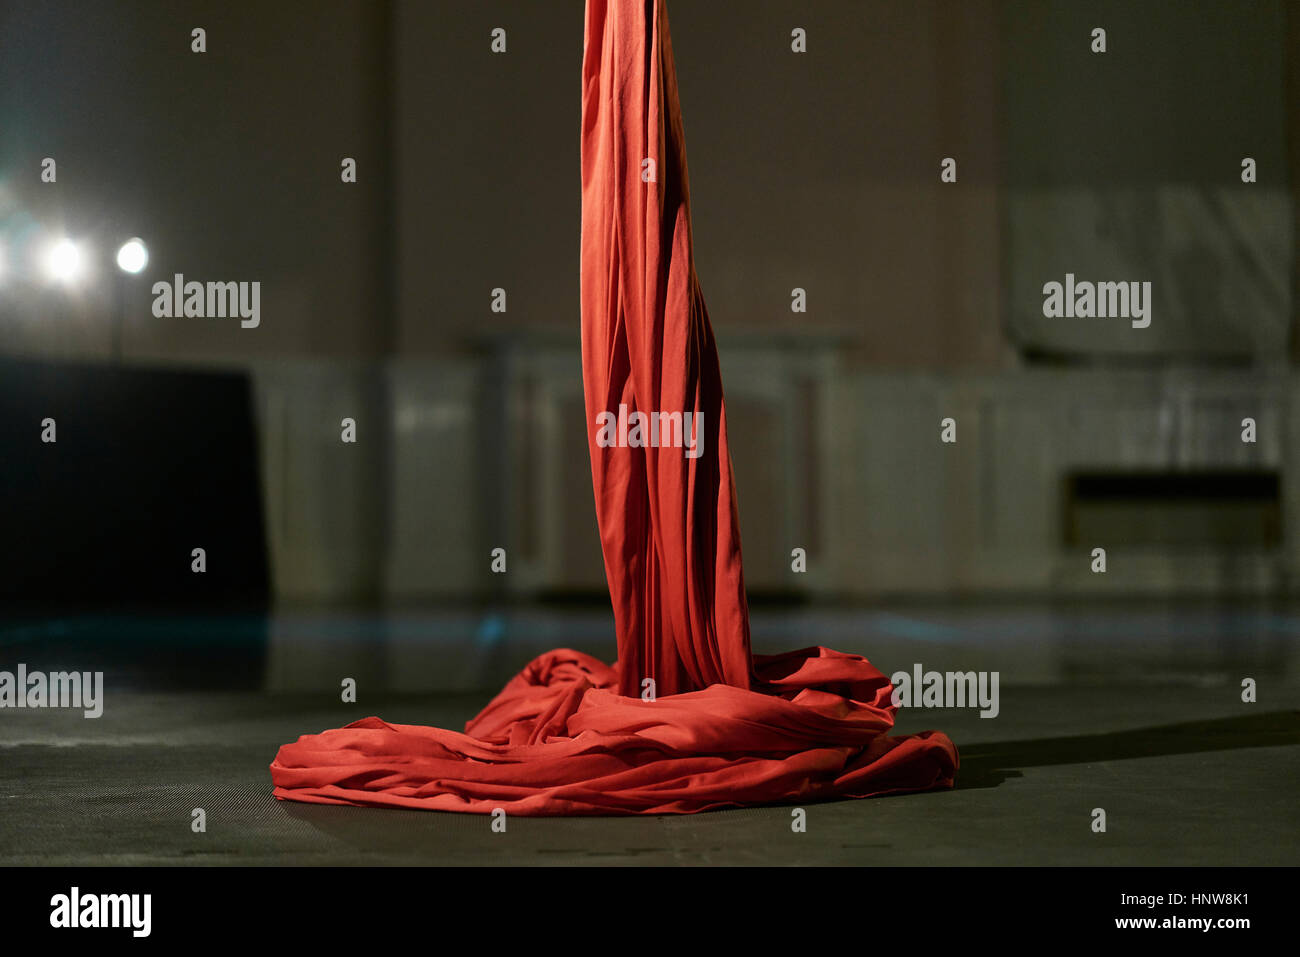 Corde de soie rouge de l'acrobatie aérienne Banque D'Images